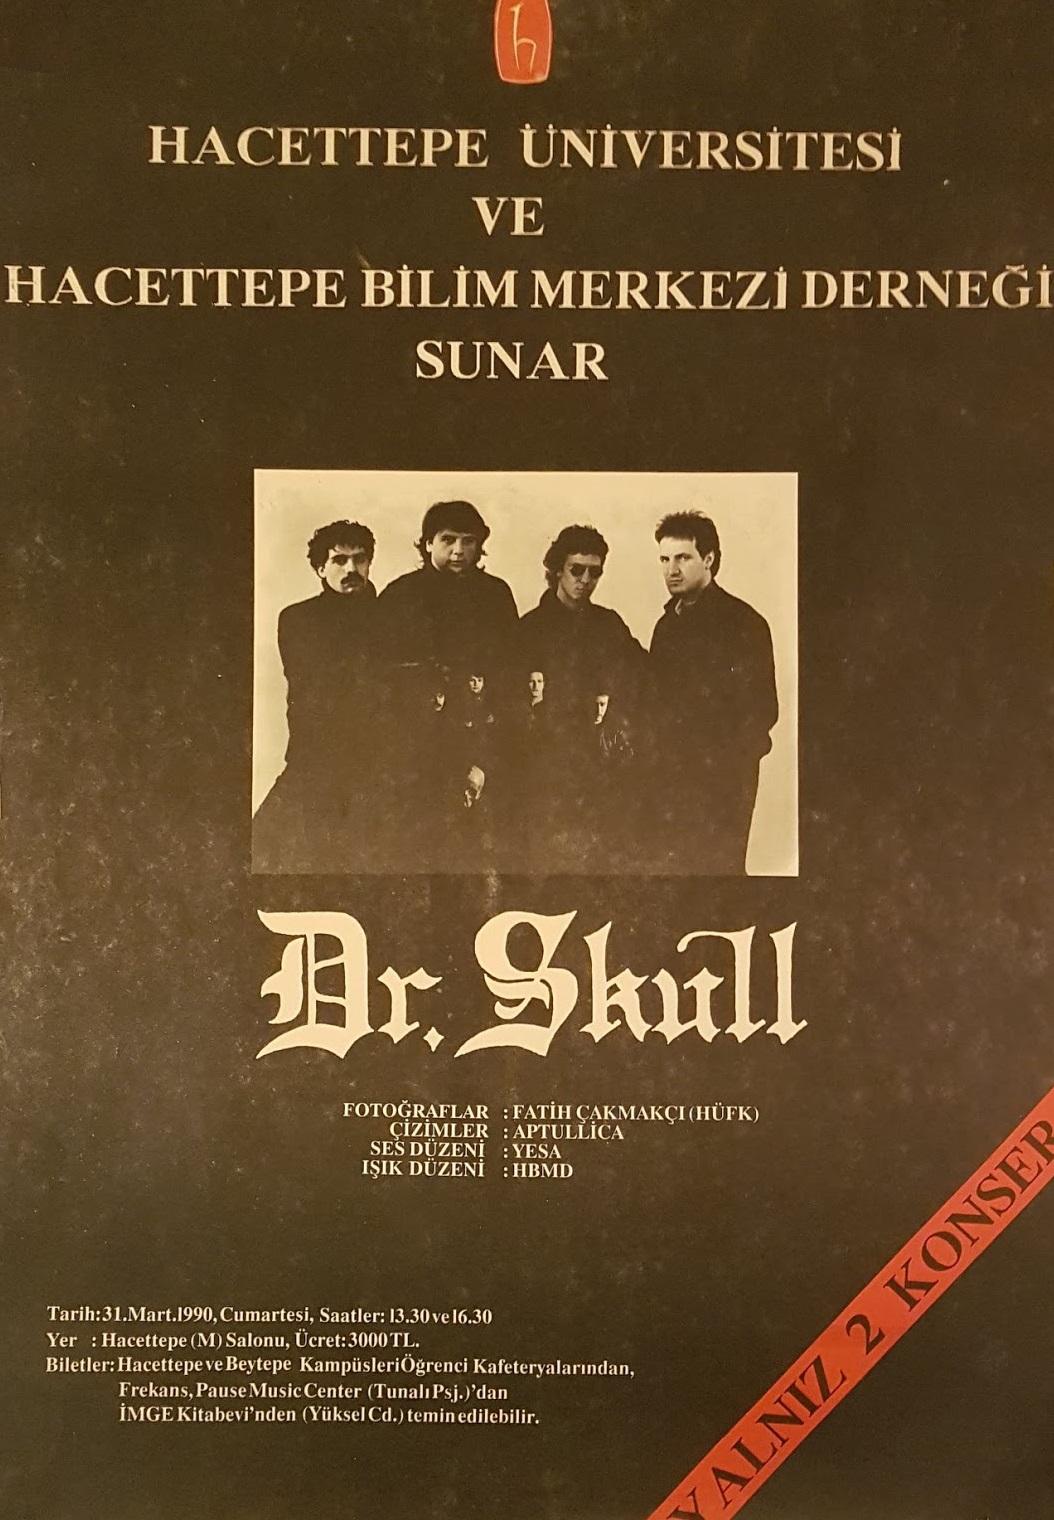 1990-03-31 Dr. Skull